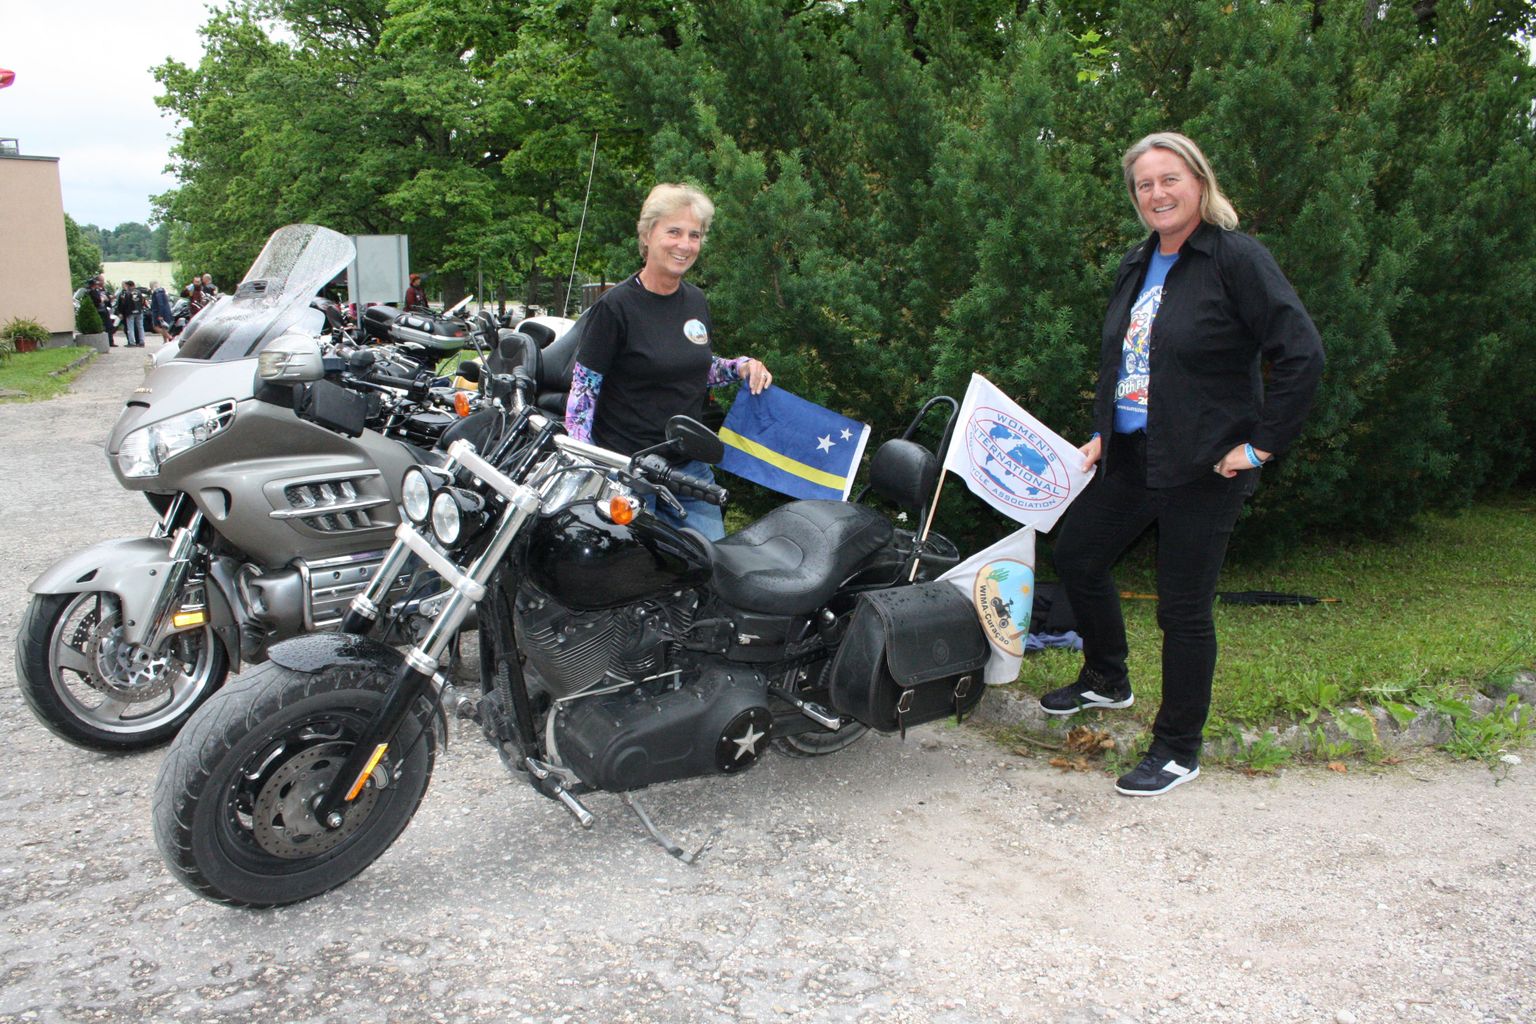 Myra Rauchbaar (vasakul) ja Rita Koopmanschap sõitsid Eestis ringi siit laenatud Harley-Davidsoni mootorrattaga. Et näidata, kust nad pärit on ning mis asju siin ajavad, kinnitasid nad tsikli külge Curaçao ja motoühenduse WIMA lipud.